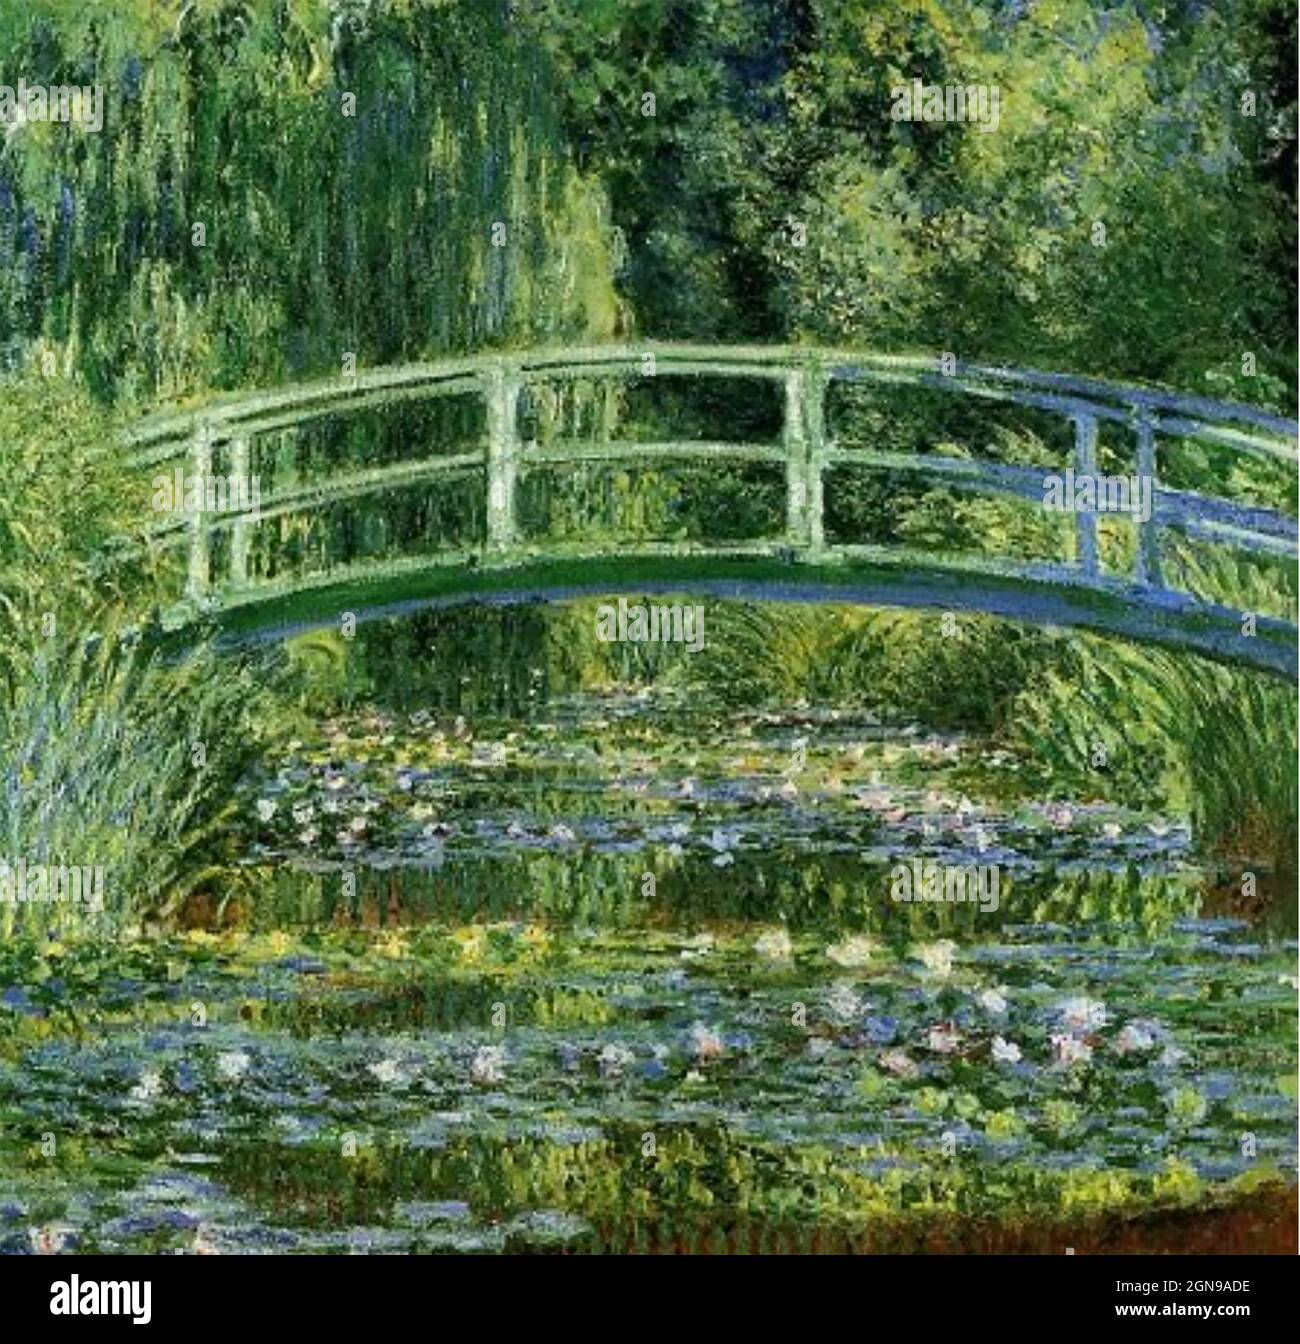 NÉNUPHARS ET PONT JAPONAIS de Claude Monet (1840-1926) peint entre 1897 et 1899. Tenue au musée d'art de l'université de Princeton Banque D'Images